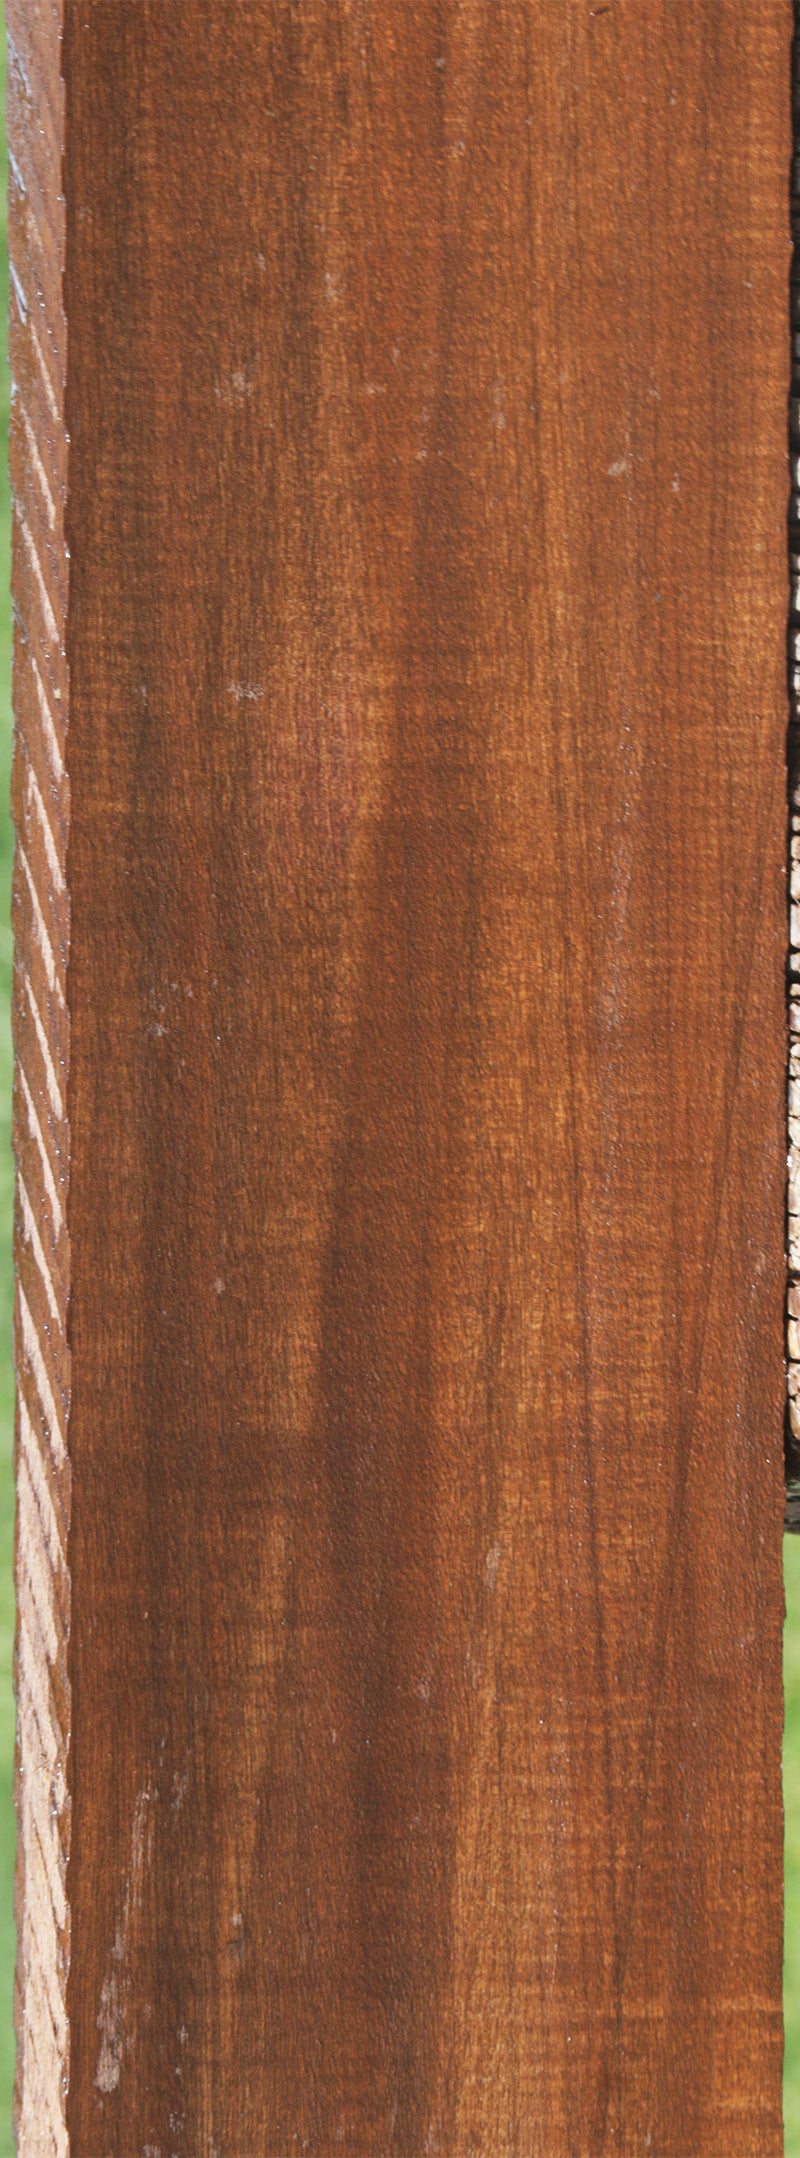 Exhibition Mansonia Lumber